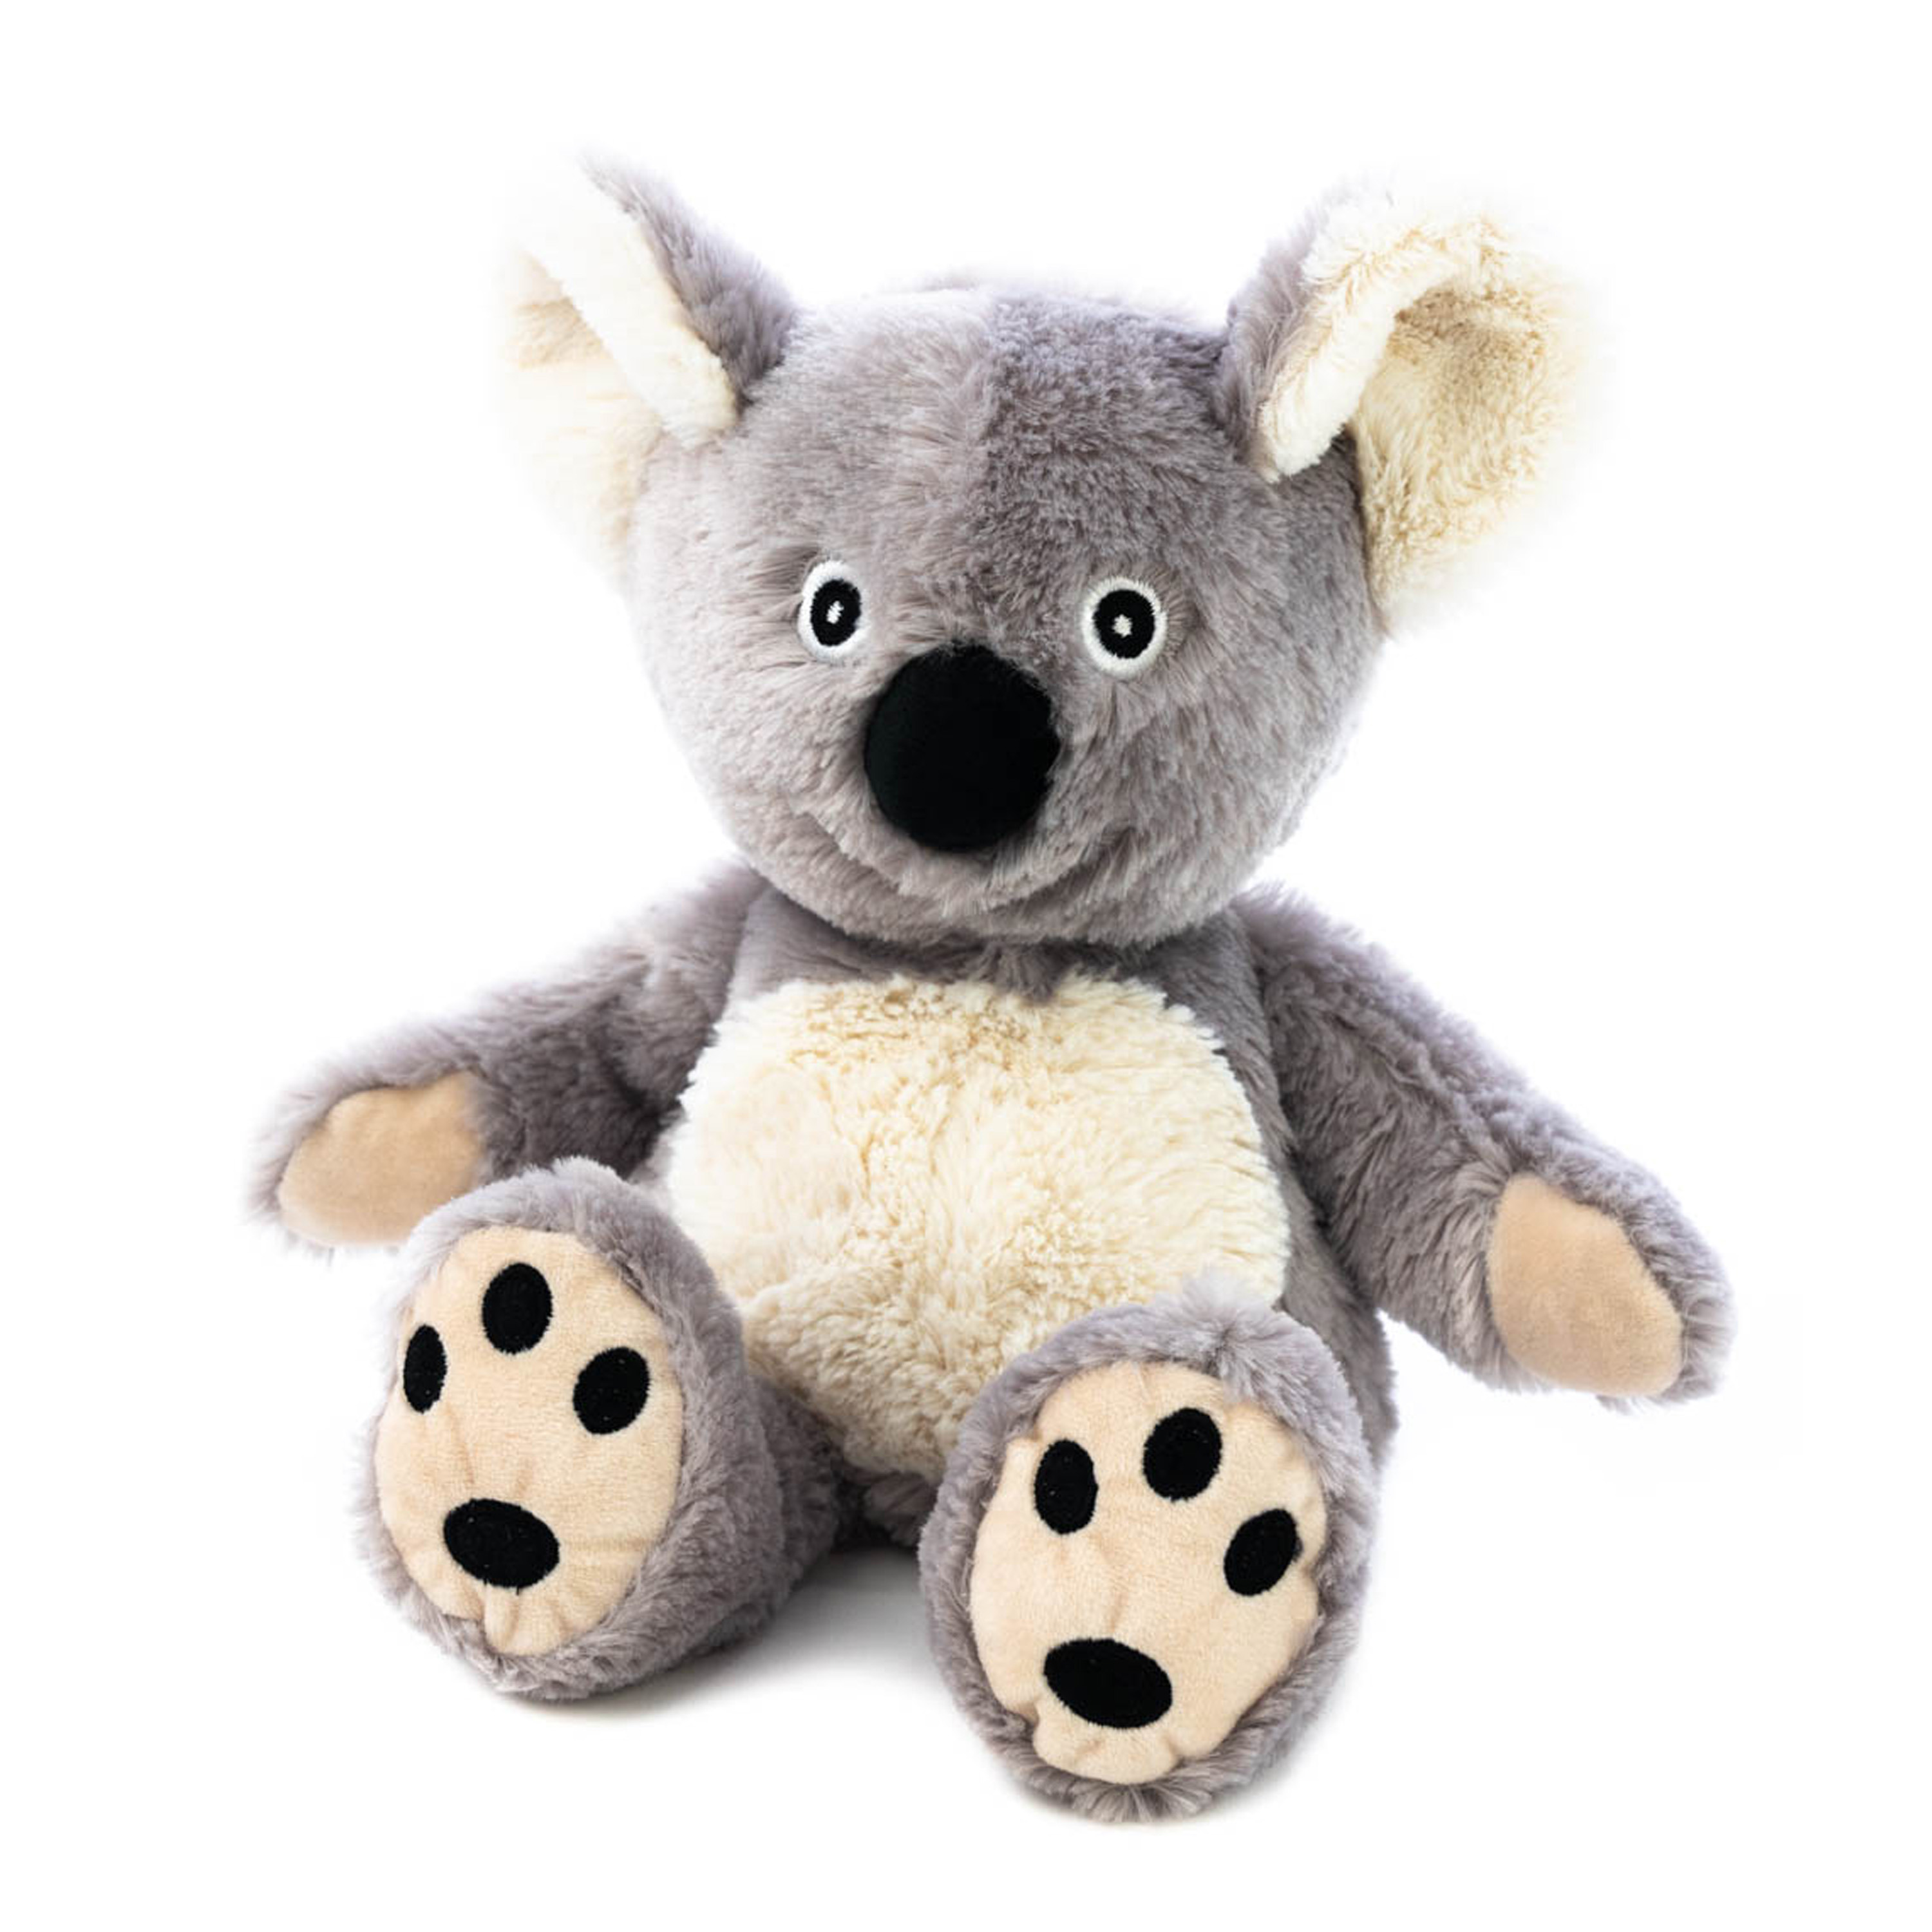 Warmte/magnetron opwarm knuffel - Koala - grijs - 35 cm - pittenzak